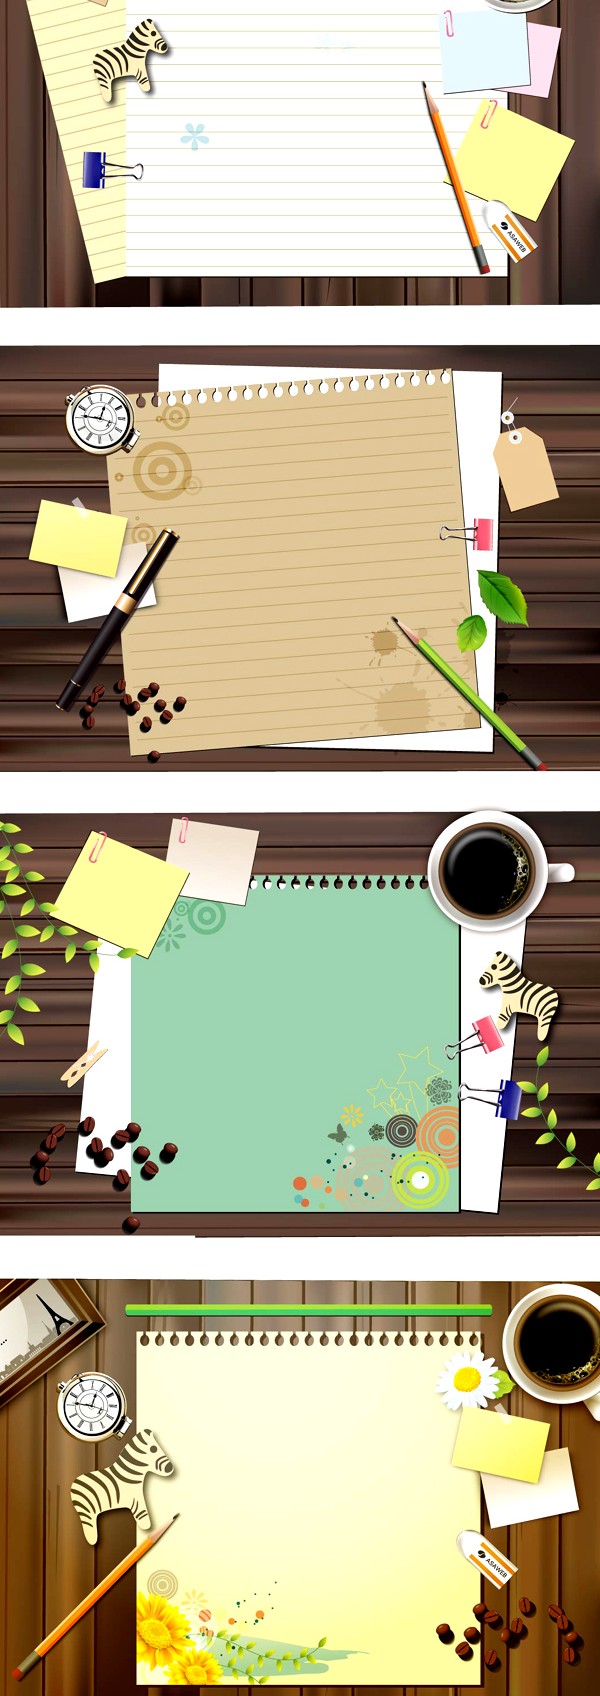 Desktop paper background vector